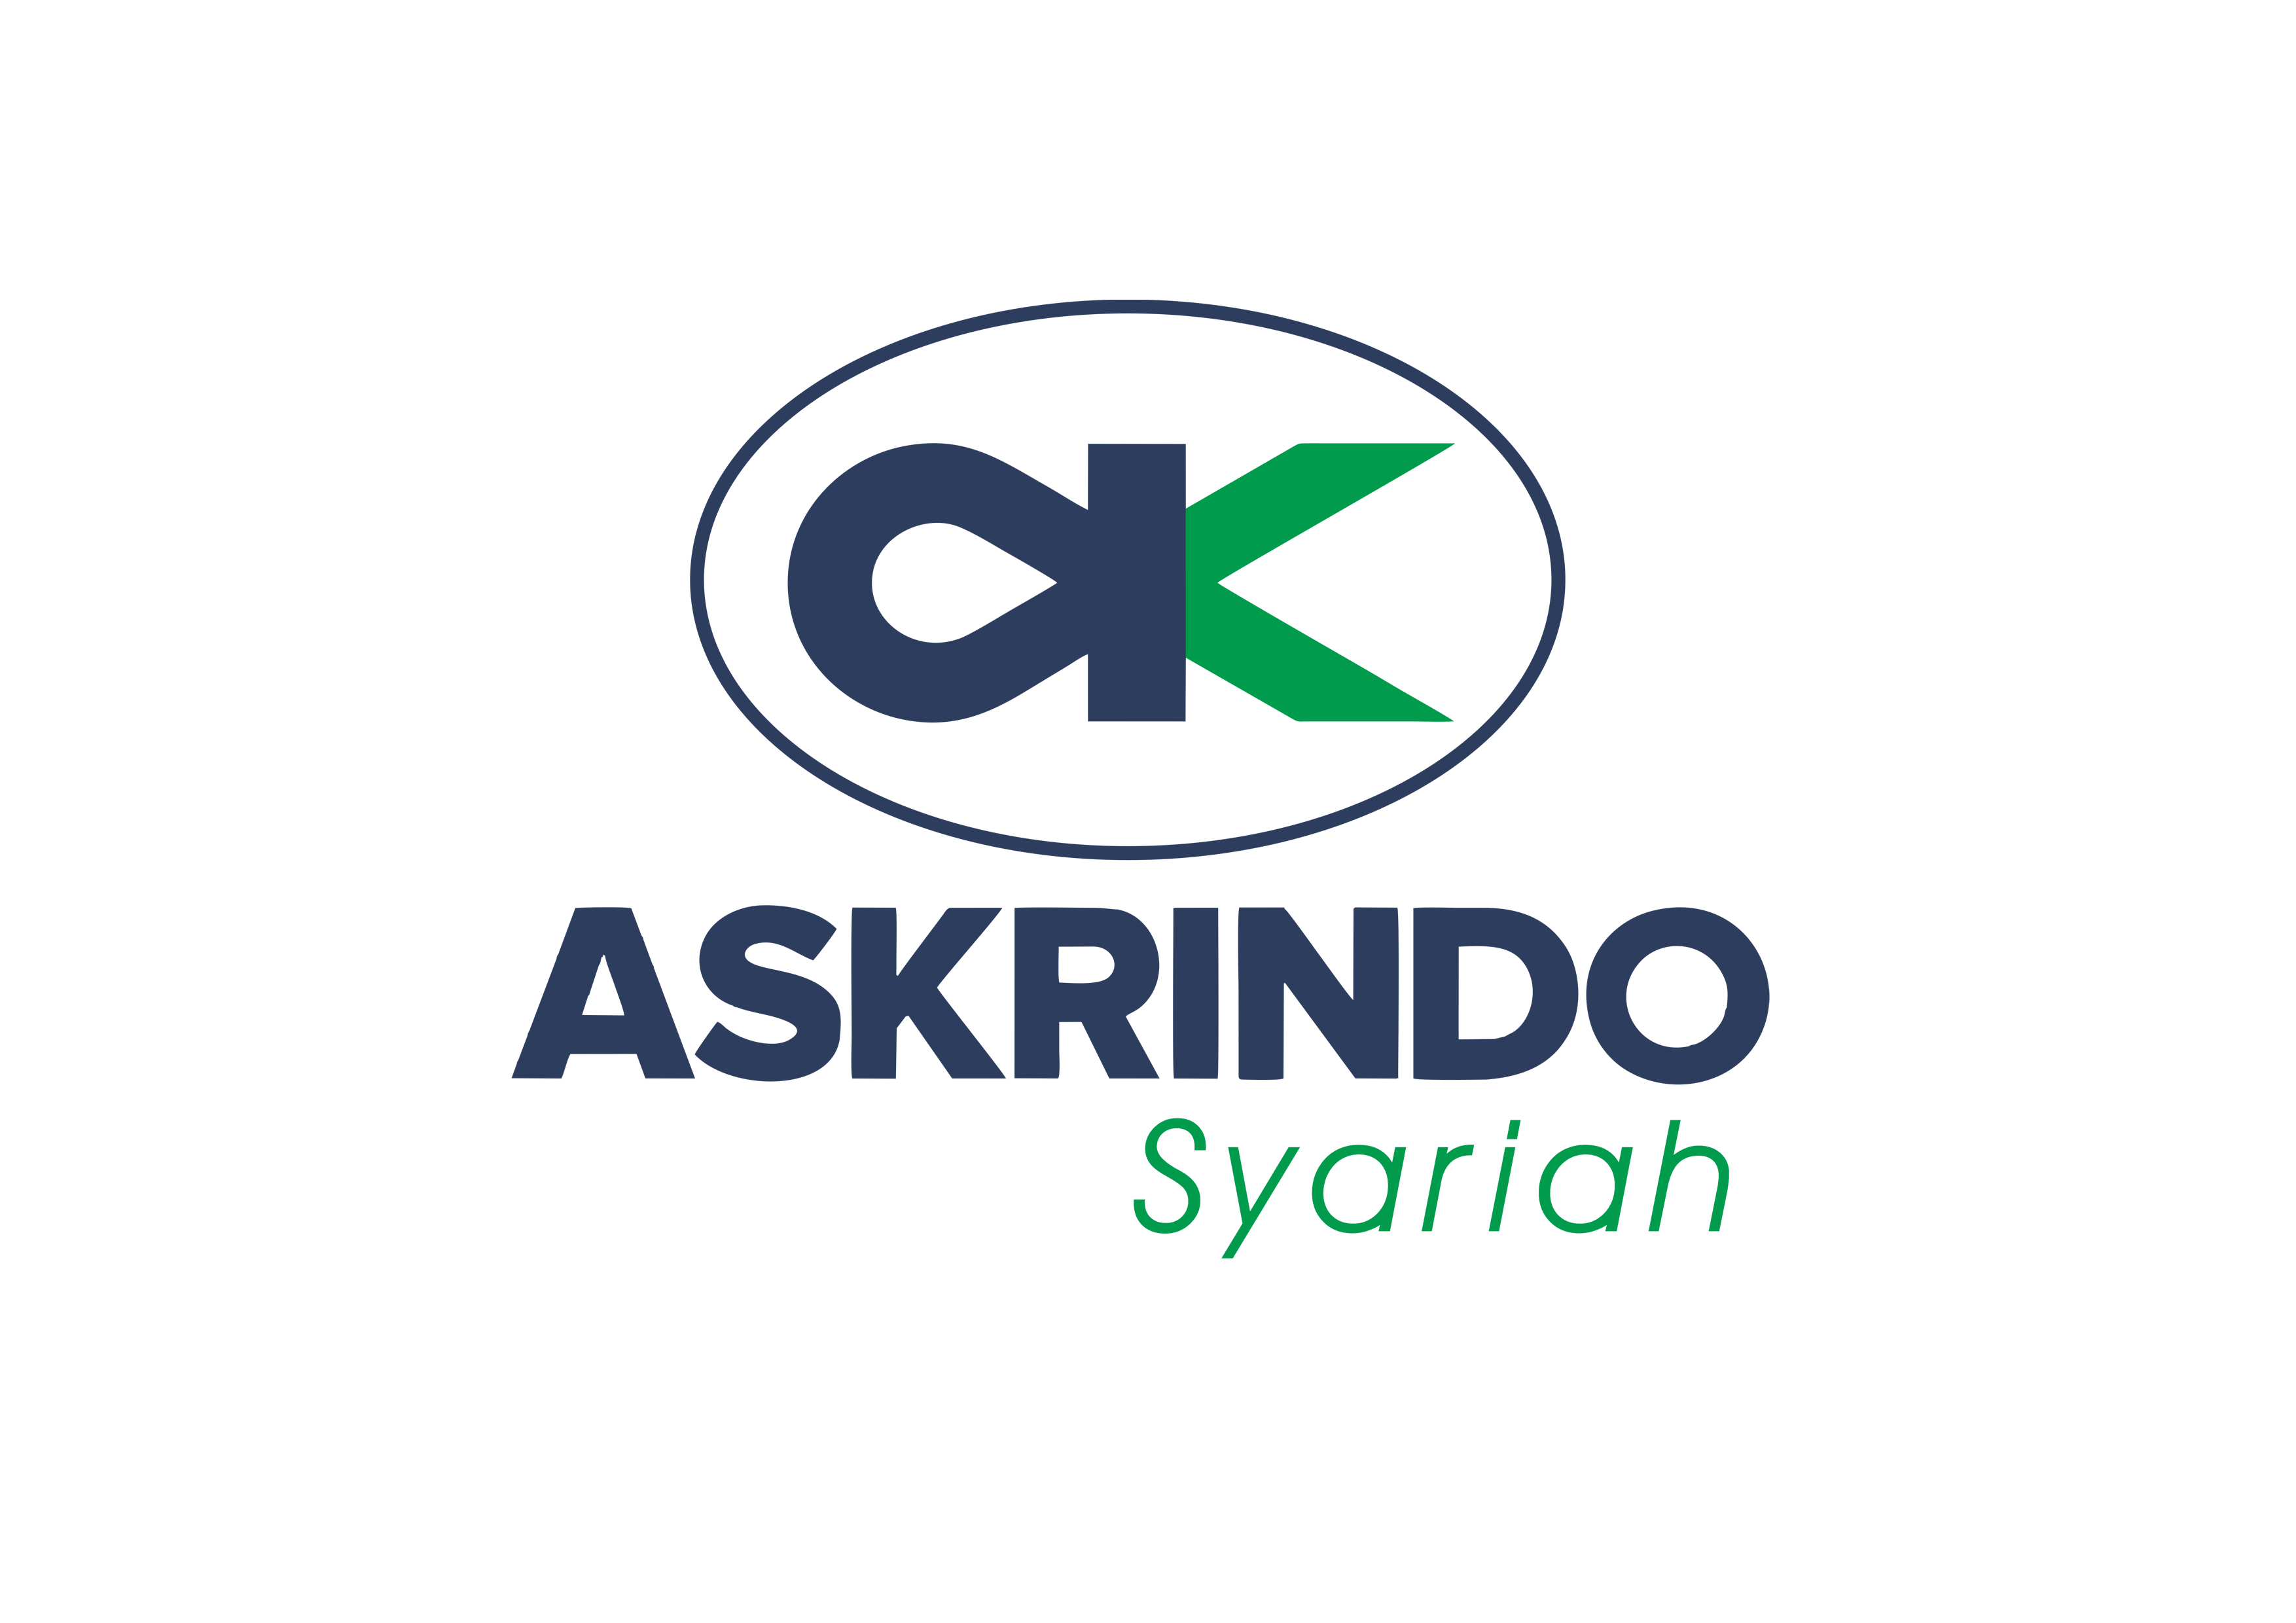 Company Profile Askrindo Syariah